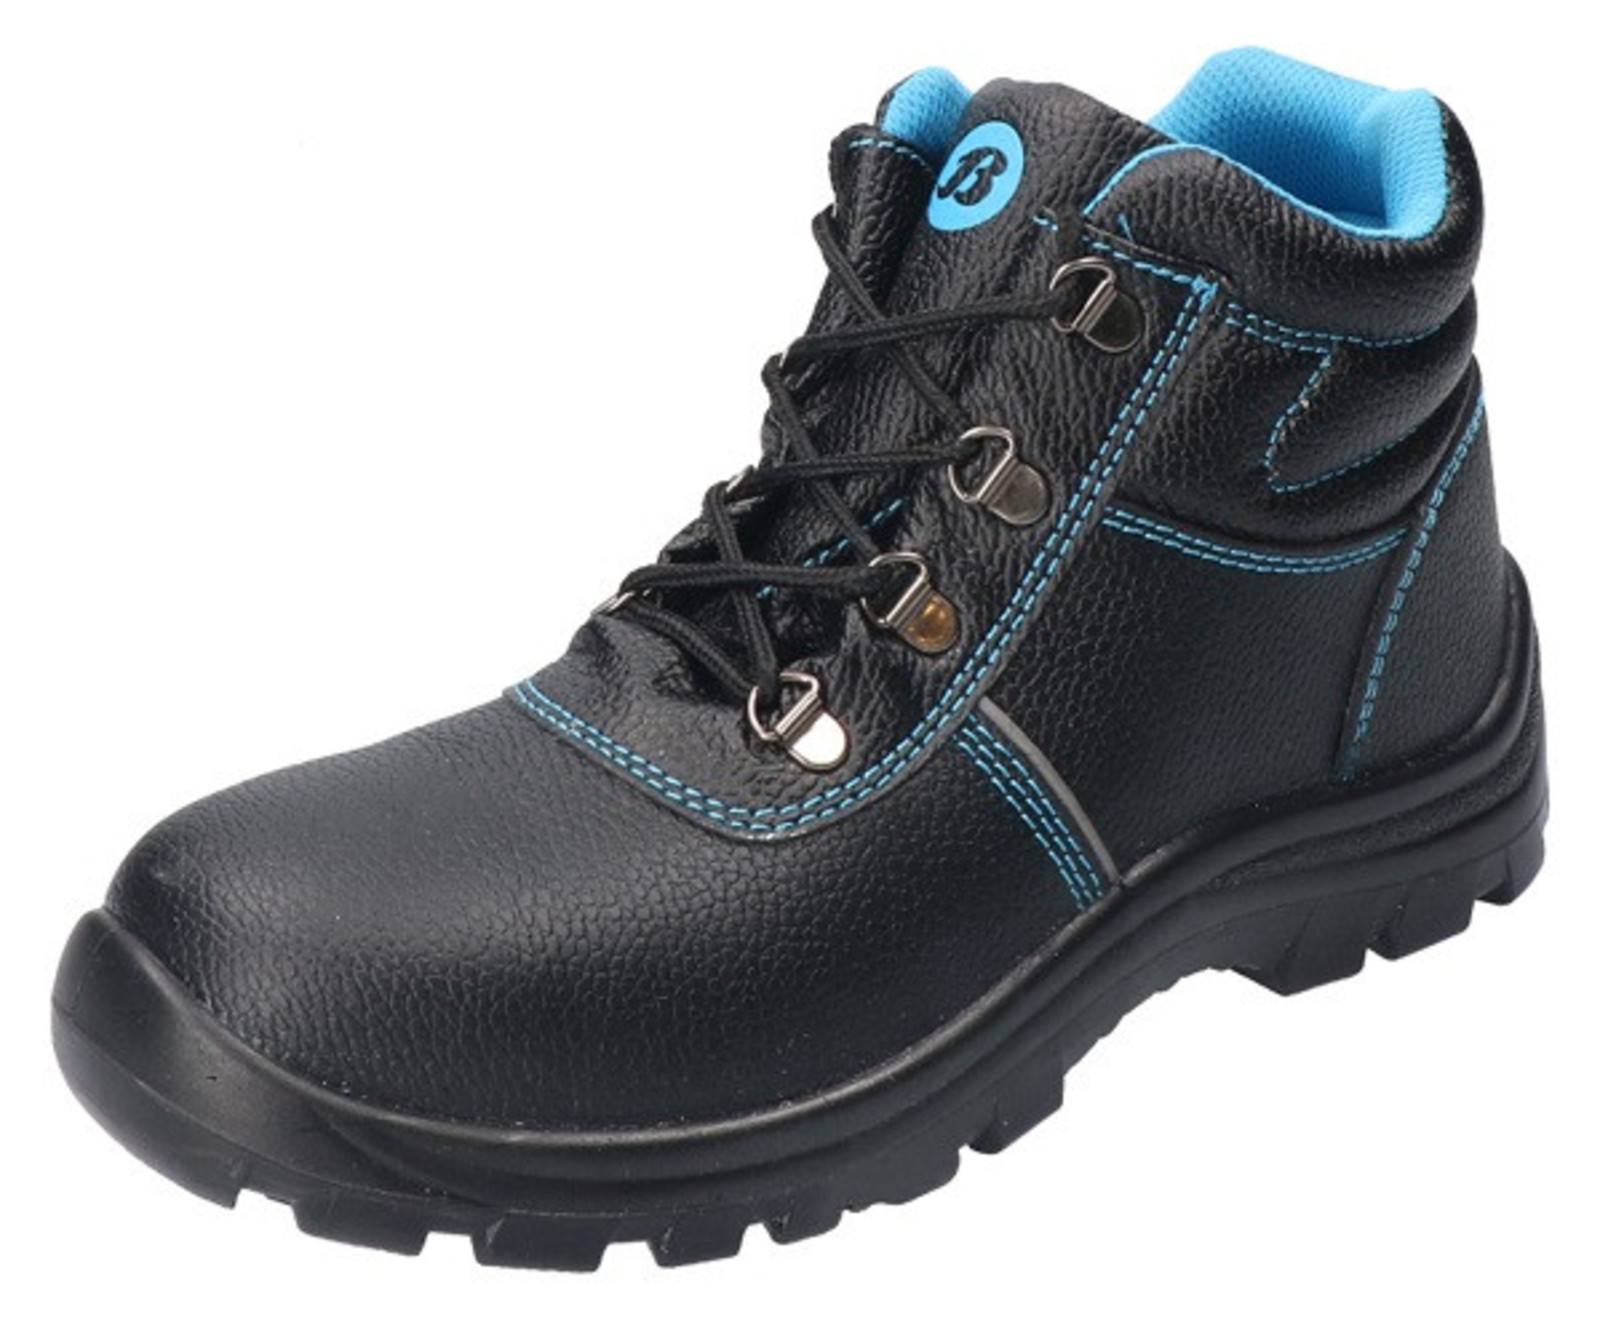 Bezpečnostná obuv Baťa Sirocco S3 - veľkosť: 37, farba: čierna